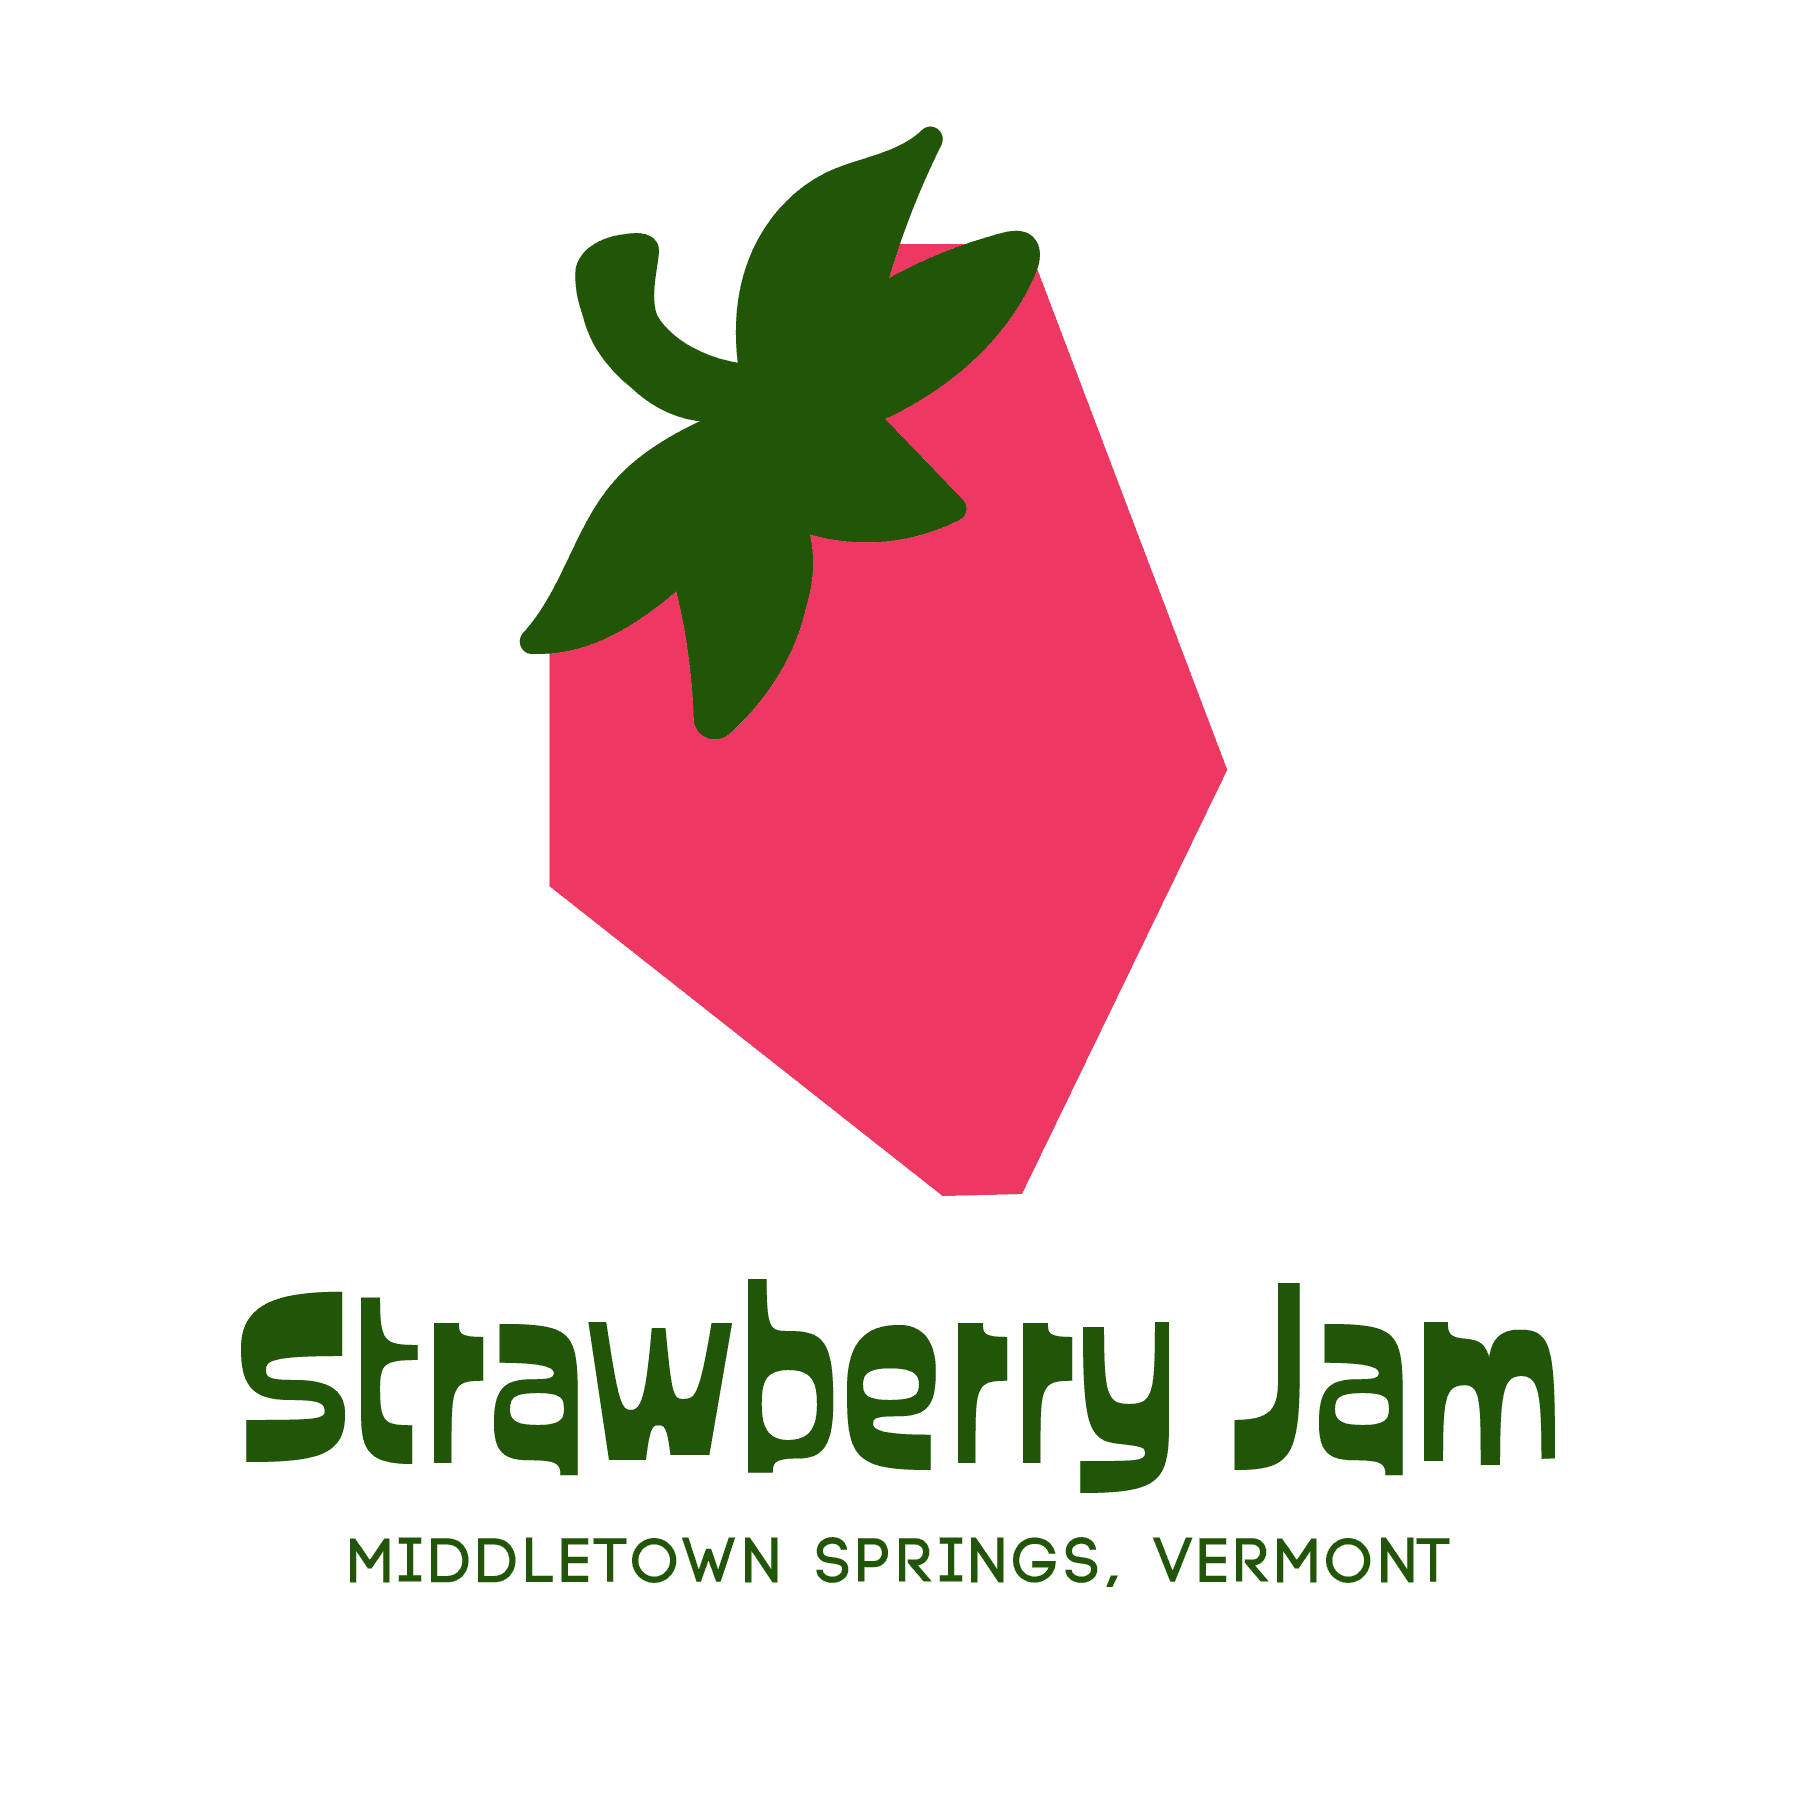 Strawberry Jam Fun Run